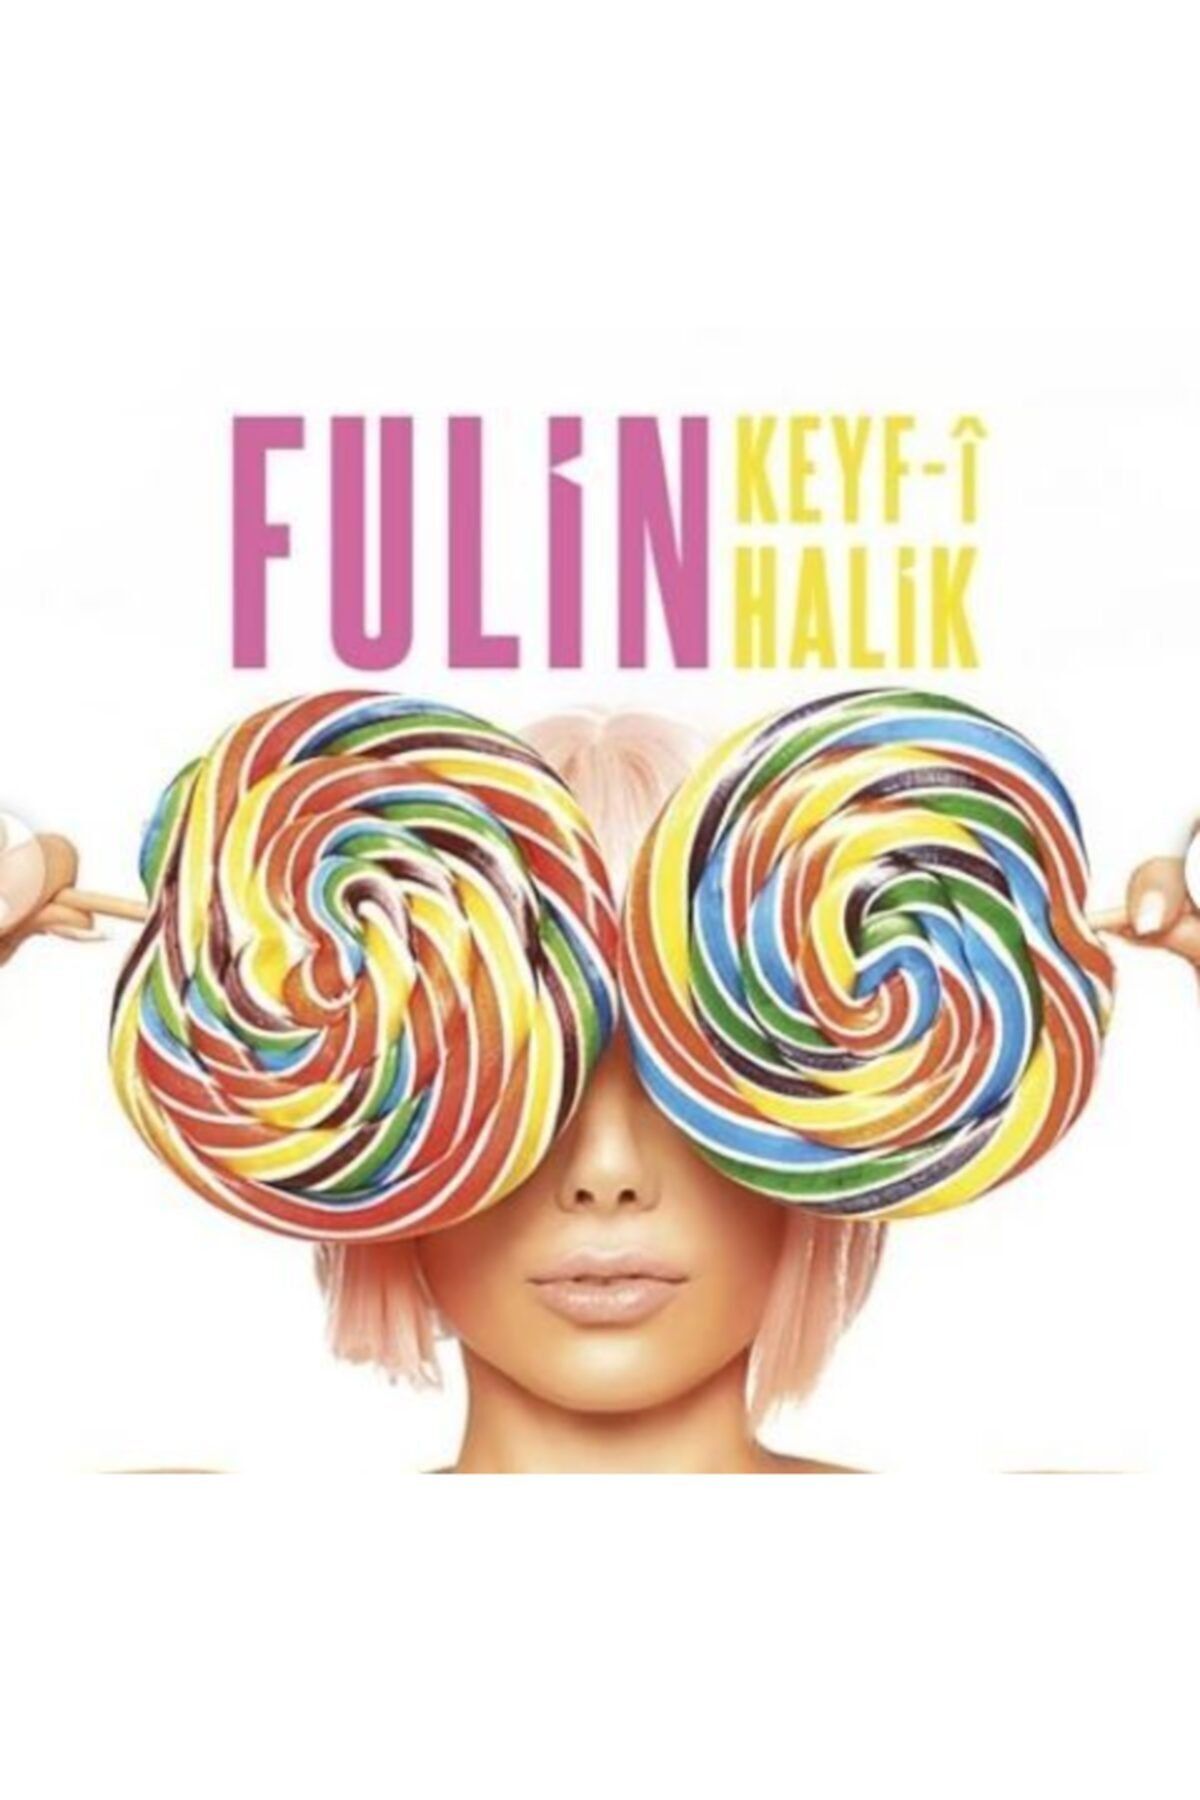 DMC Fulin - Keyf-i Halik